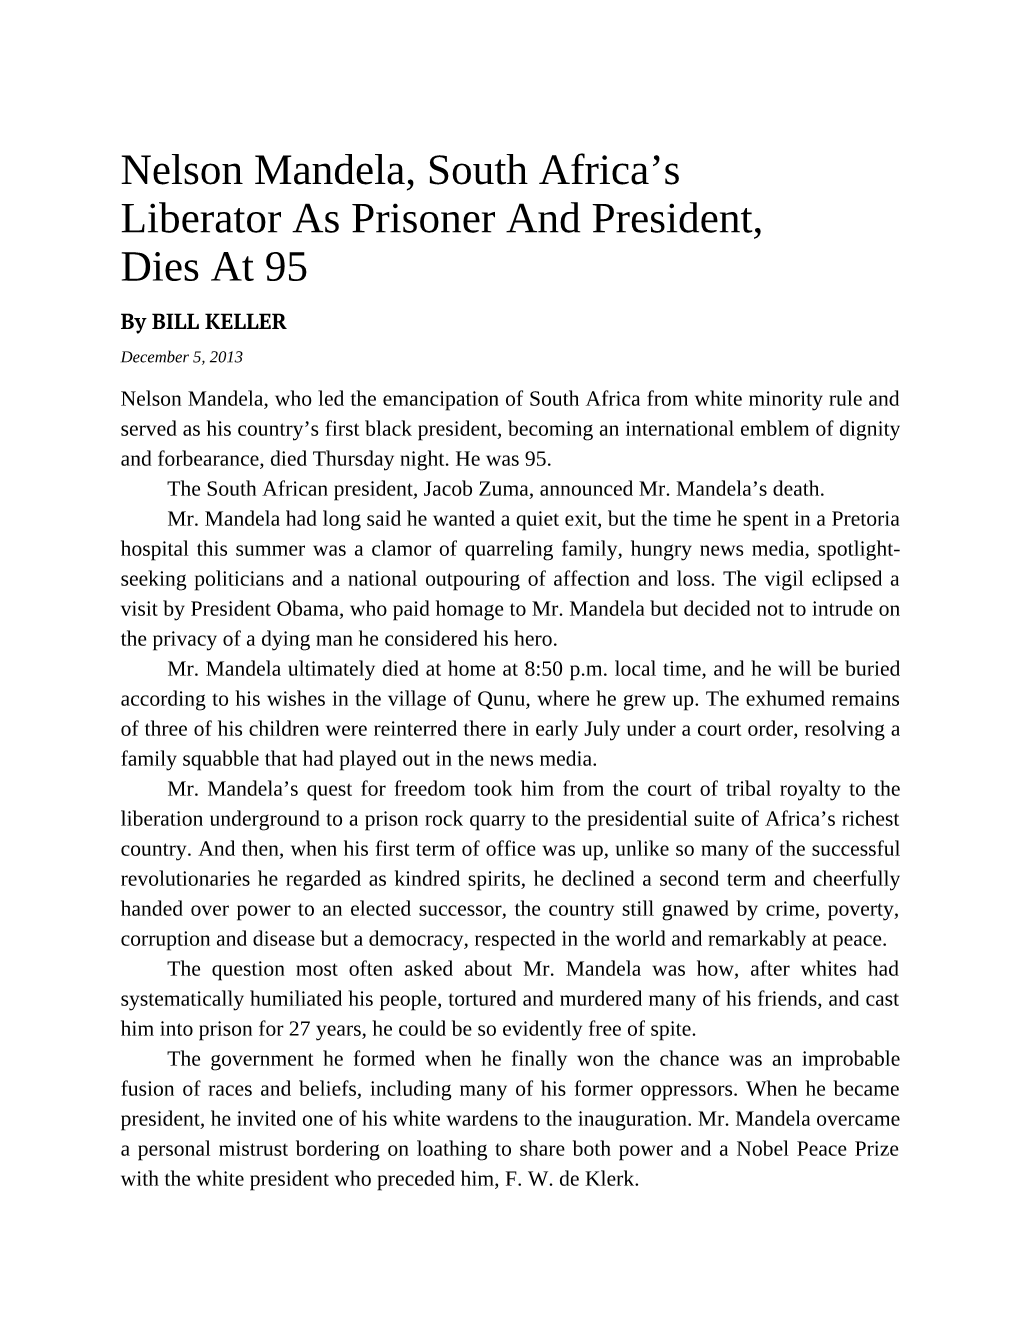 Nelson Mandela, South Africa's Liberator As Prisoner and President